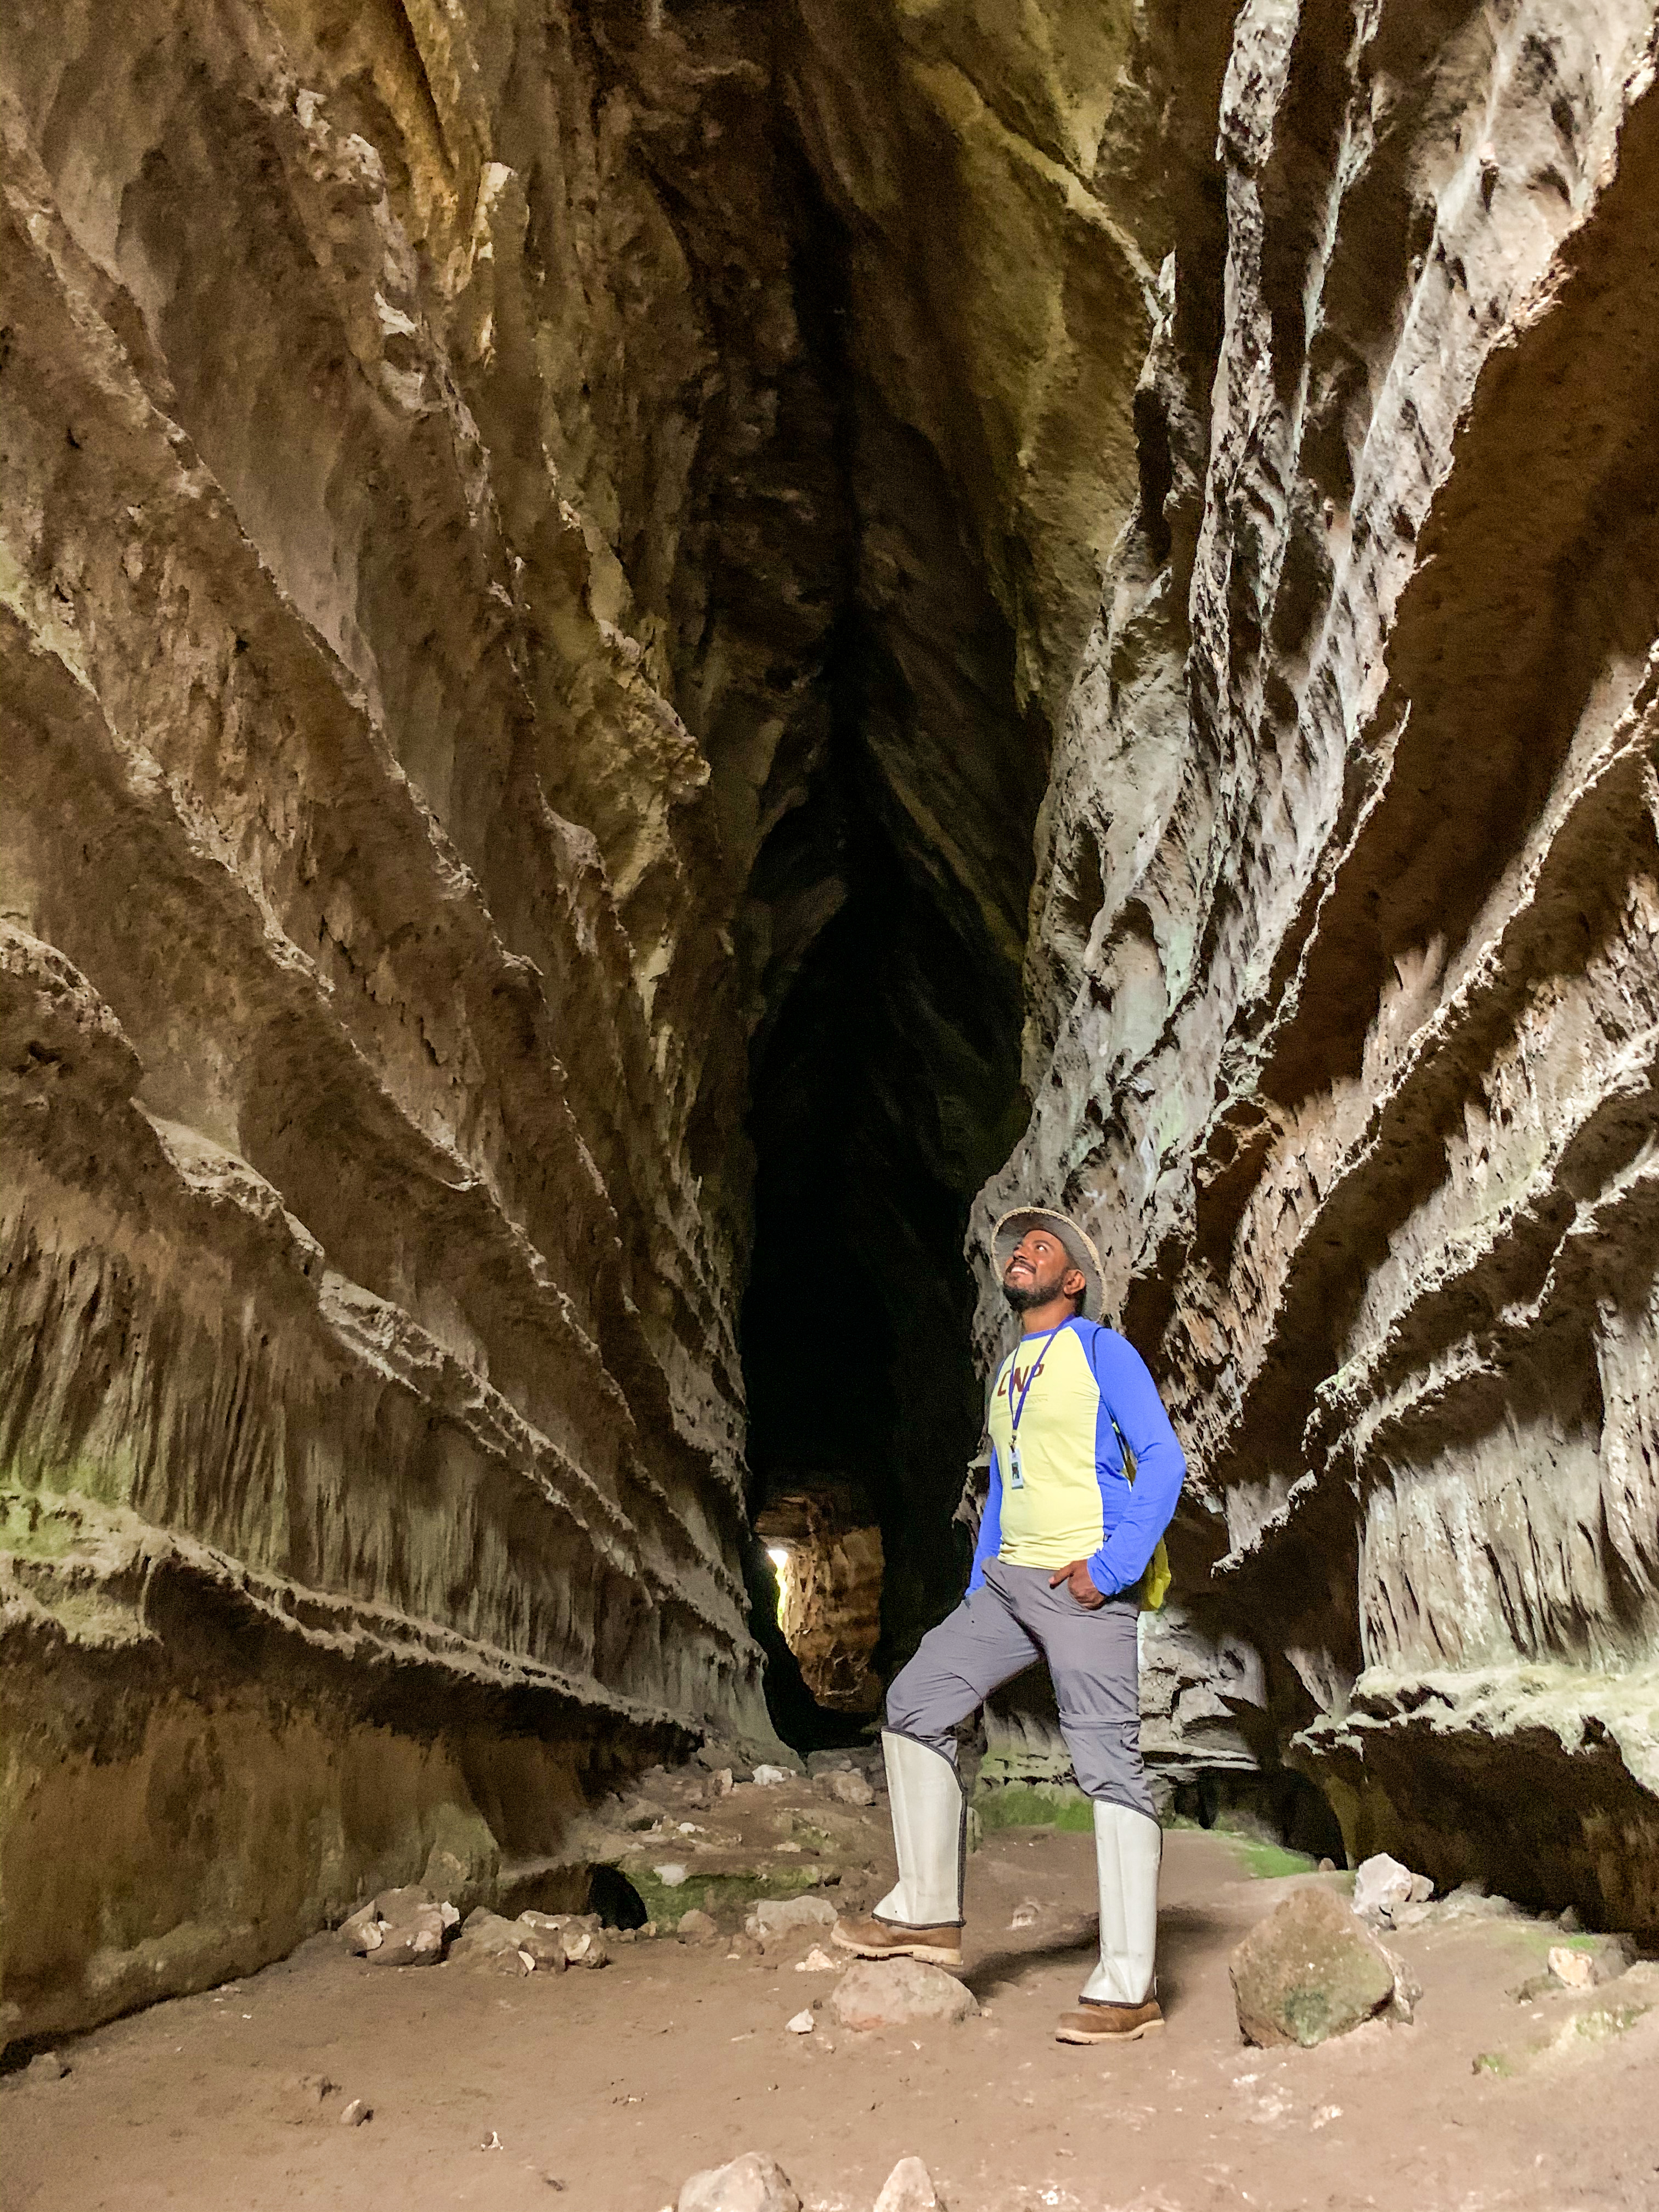 Caverna Kiogo Brado, significa “Ninho dos pássaros” com 270m podendo atravessar de um lado para outro.